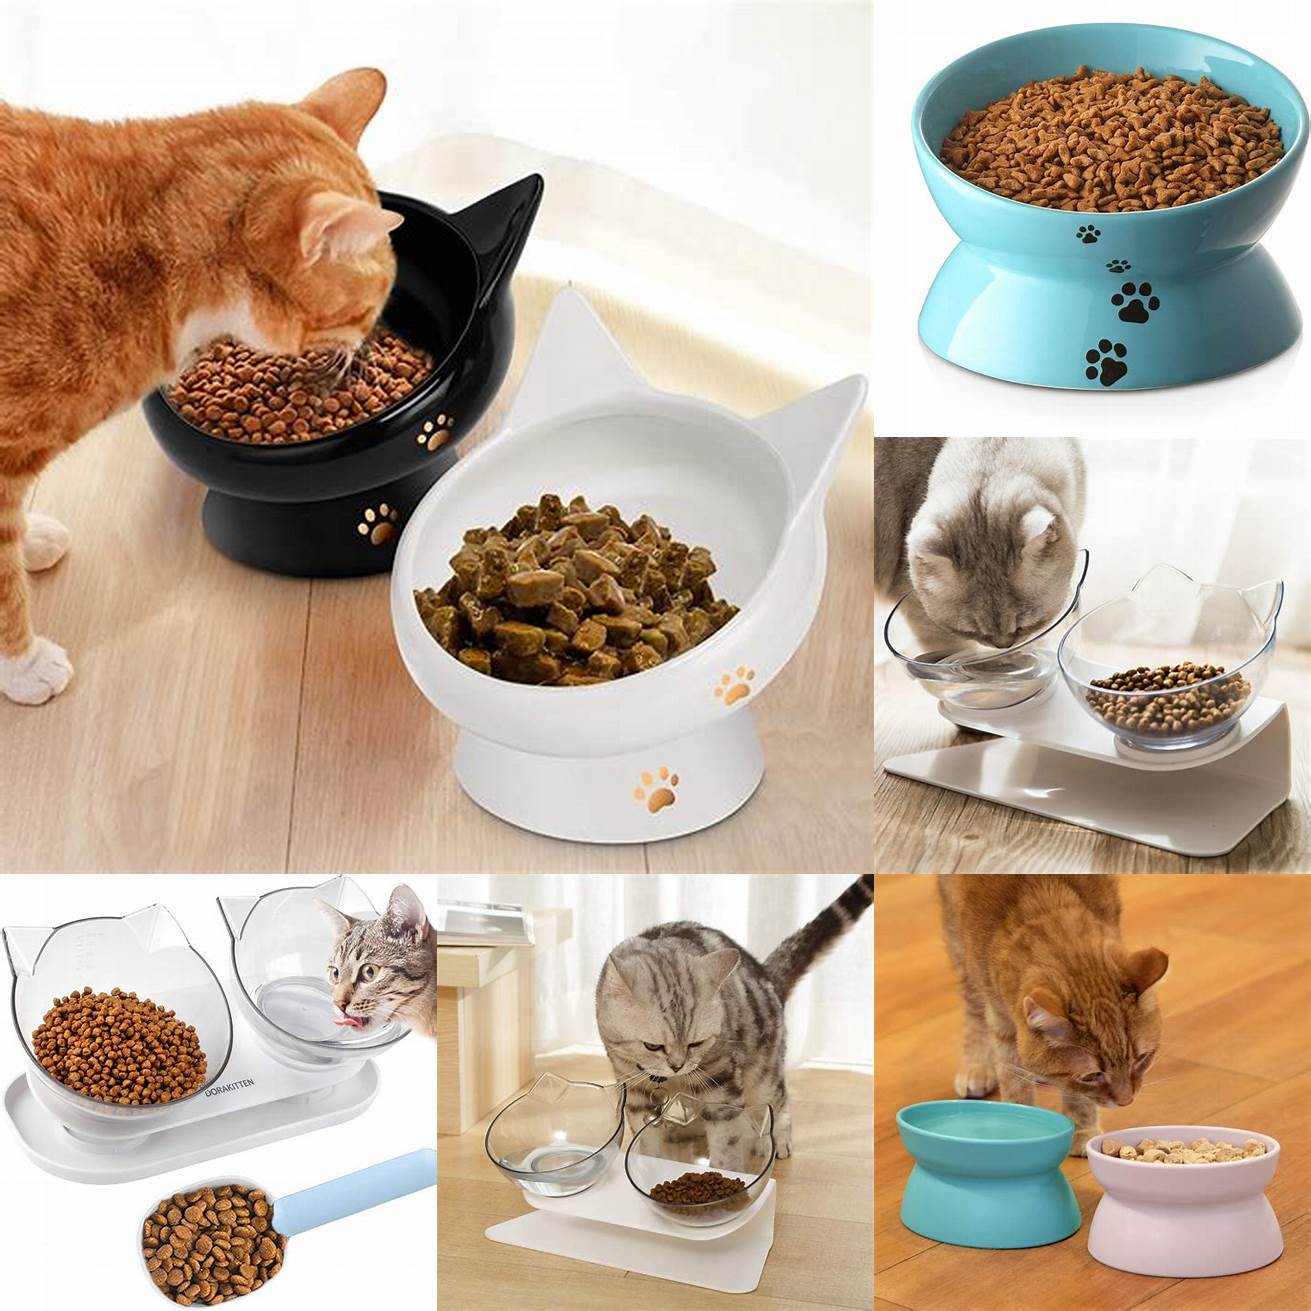 Bowl of cat food